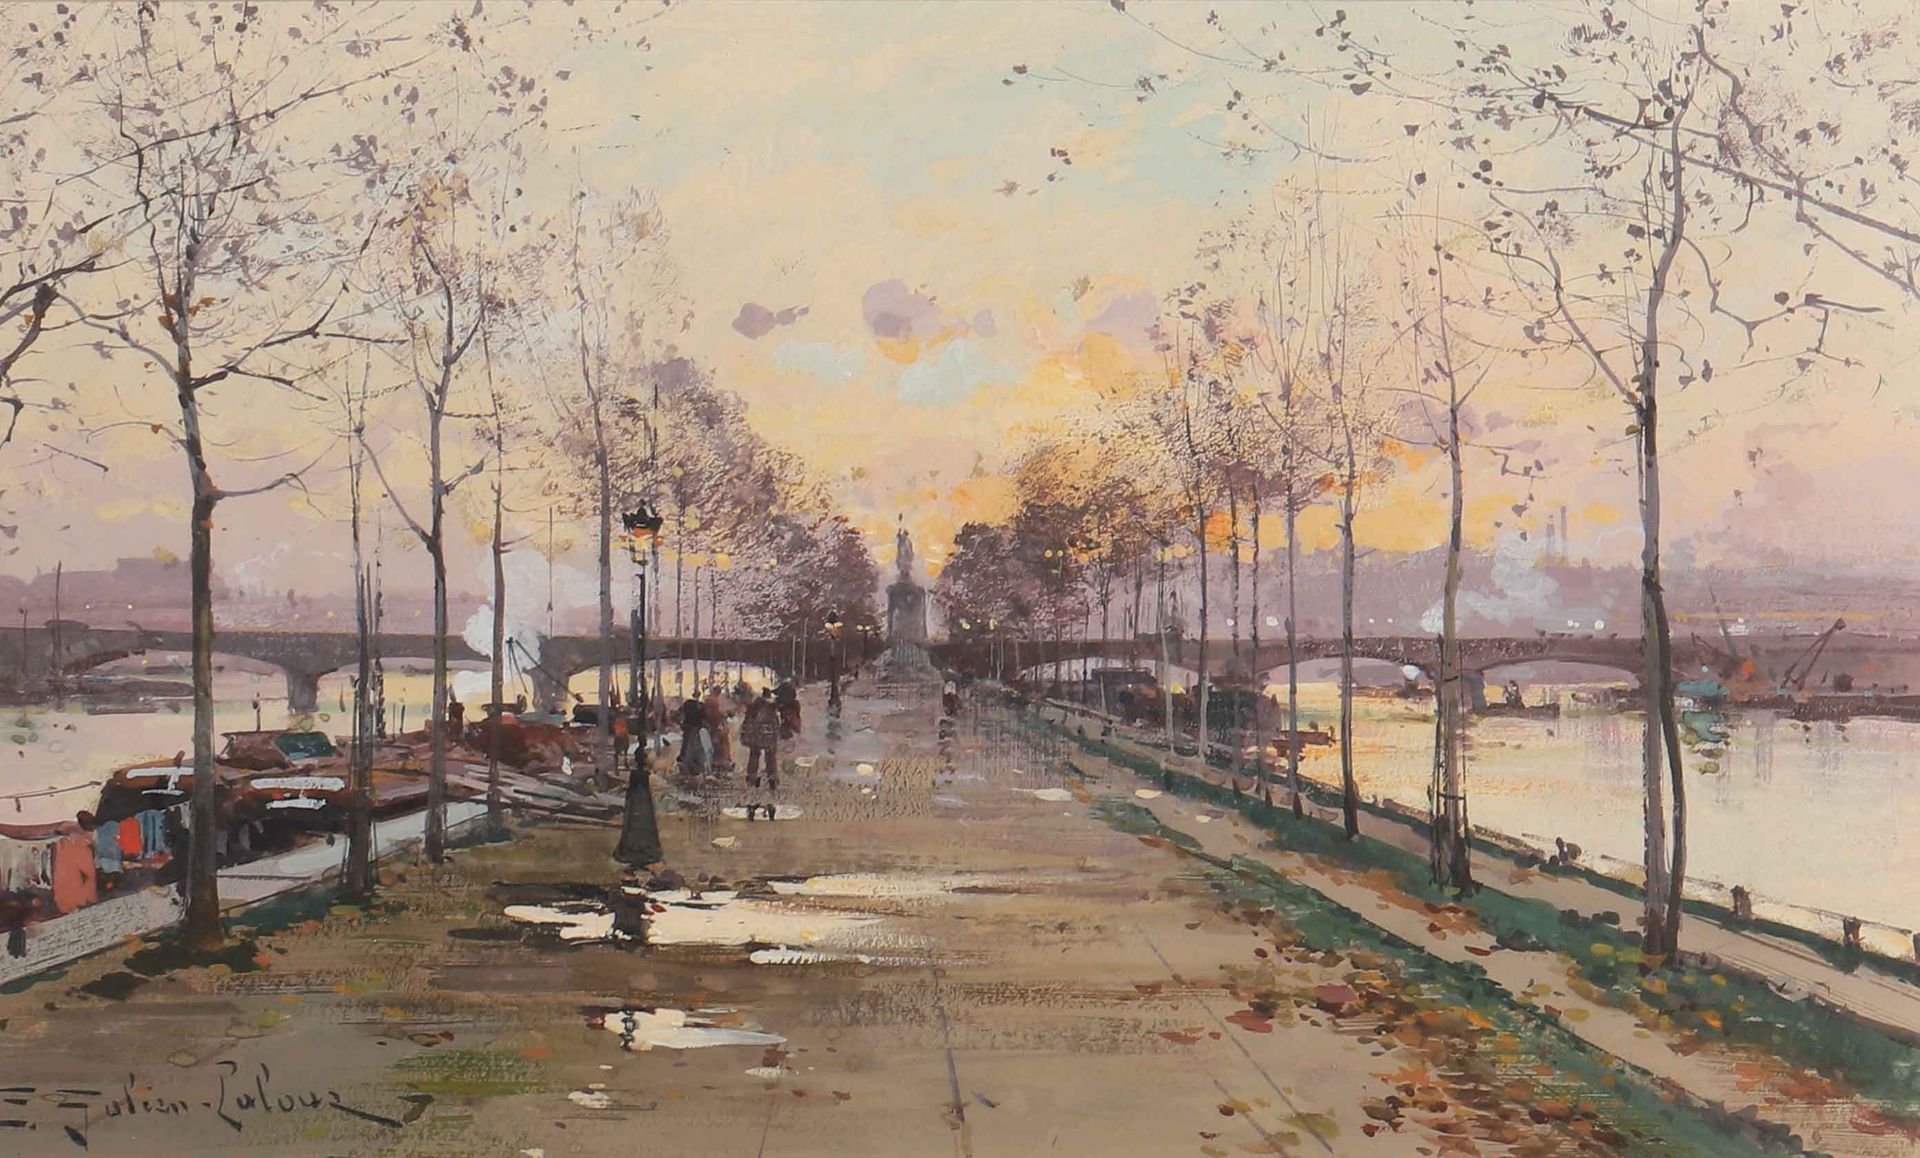 Null 欧仁-加里安-拉卢埃(1854-1941)

巴黎的天鹅岛

水粉画，左下角有签名

18 x 30厘米